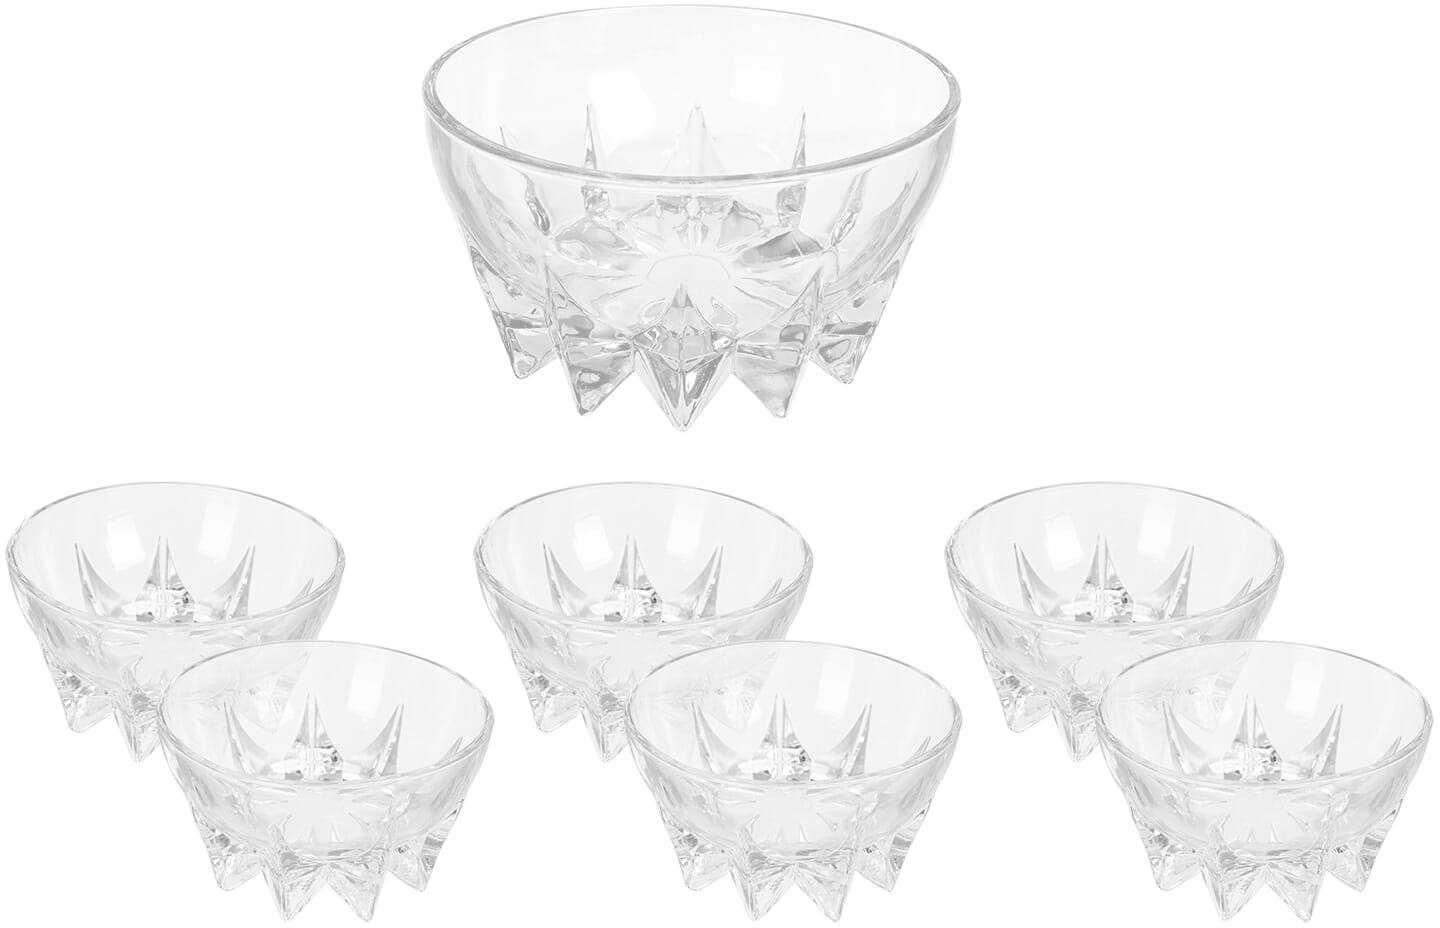 Get City Glass Dessert Bowls Set, 7 Piece - Clear with best offers | Raneen.com